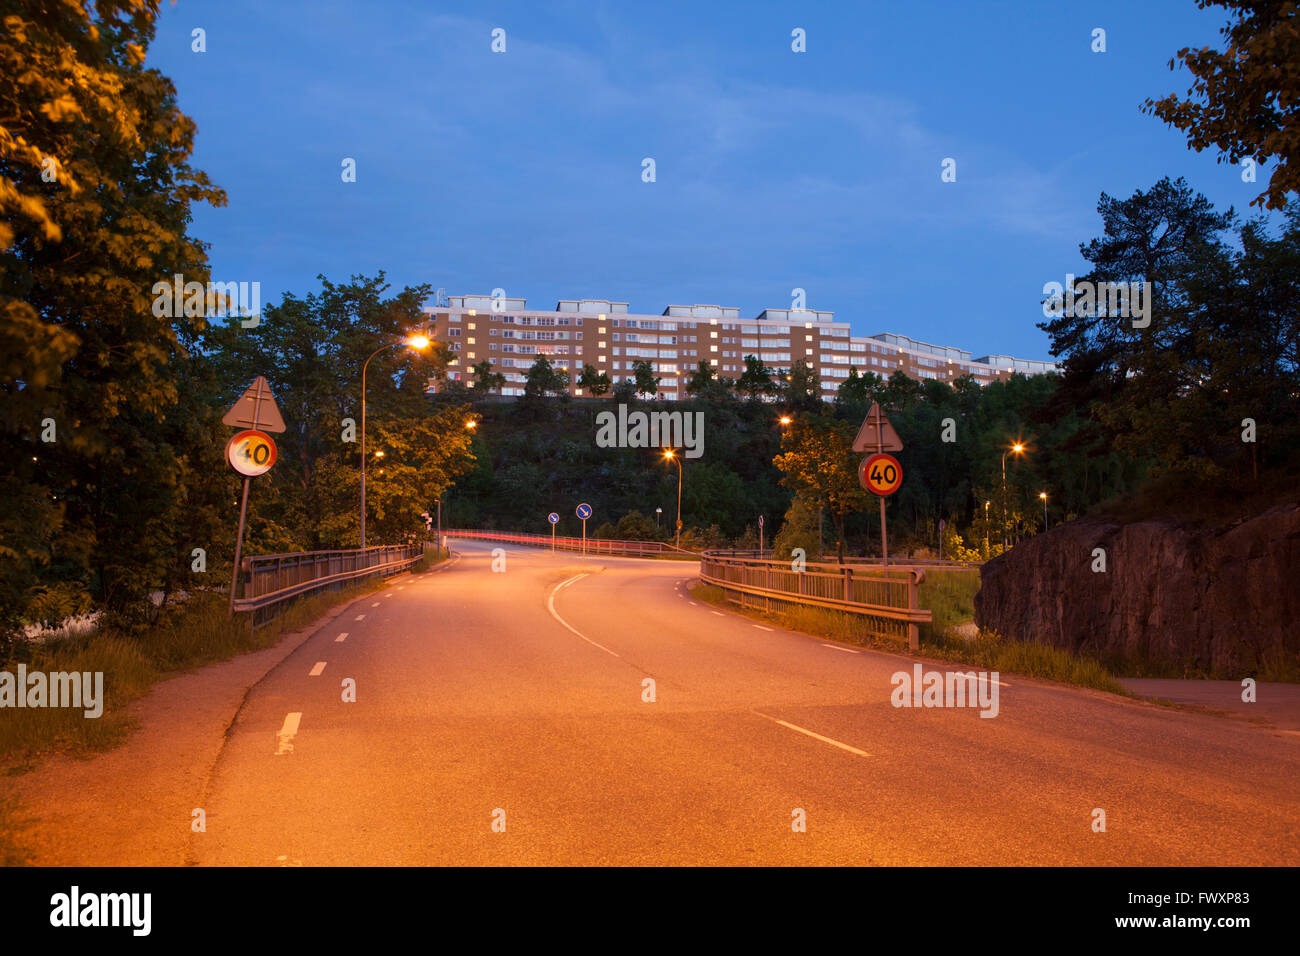 Suecia, Sodermanland, Nacka, Henriksdalberget, zona residencial en la noche Foto de stock